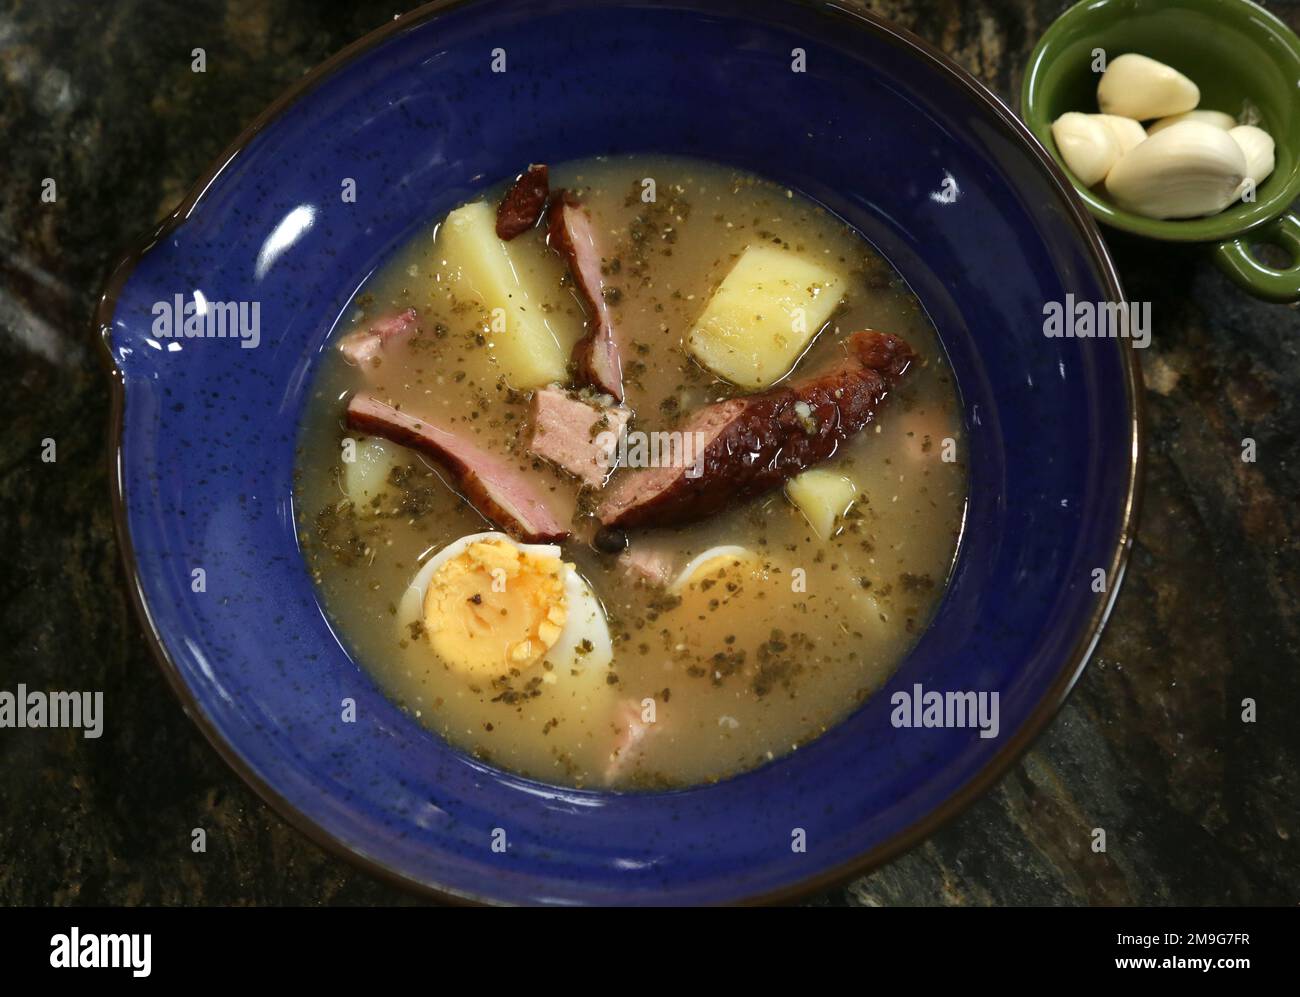 Soupe aigre traditionnelle de zurek à base de farine de seigle servie avec des saucisses et des œufs durs. Banque D'Images